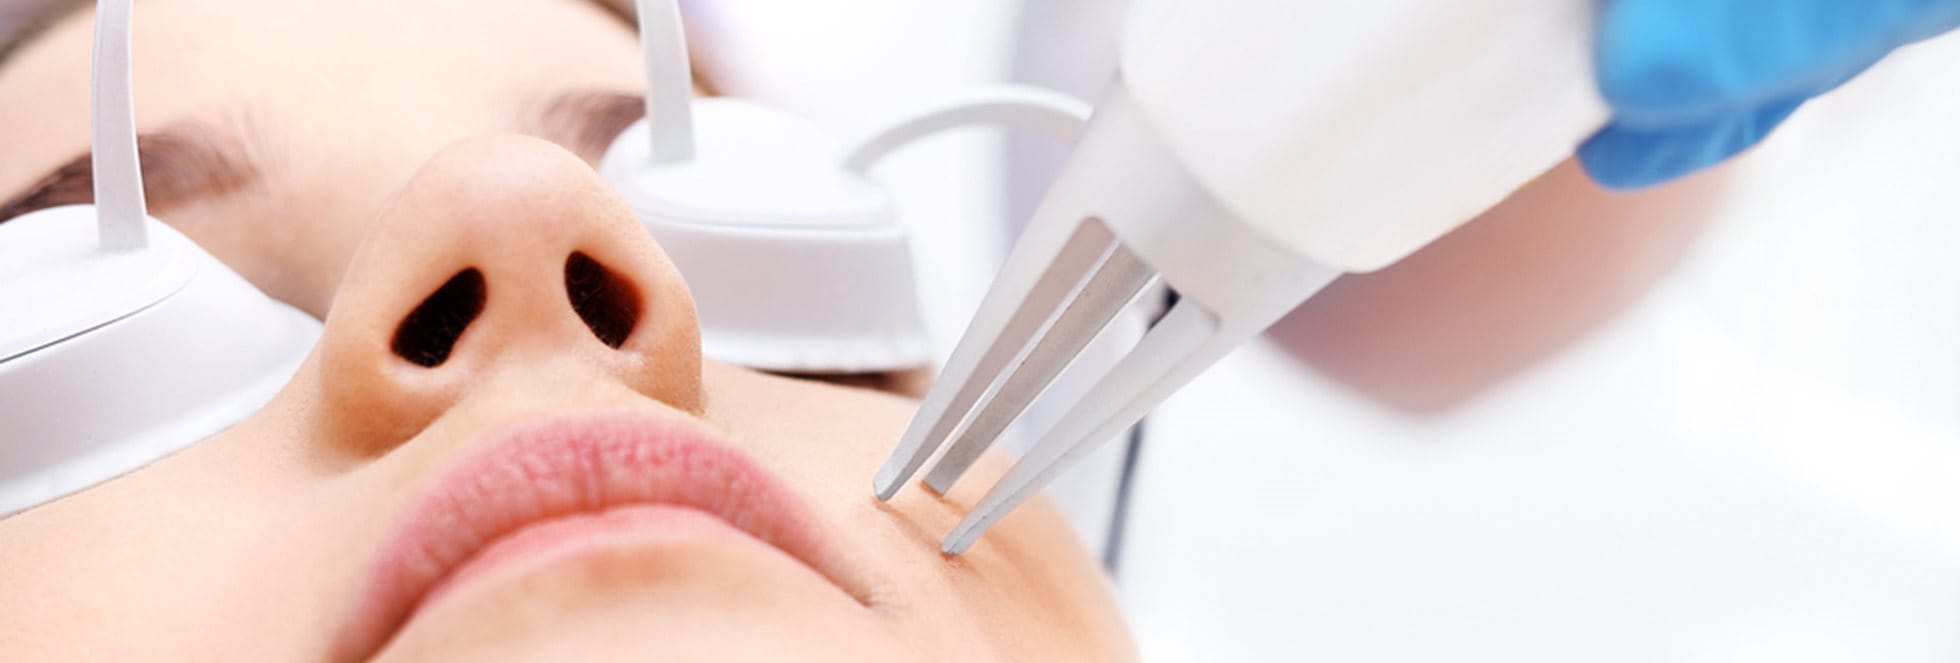 Laserbehandeling  wordt gebruikt voor een aantal verschillende huidproblemen